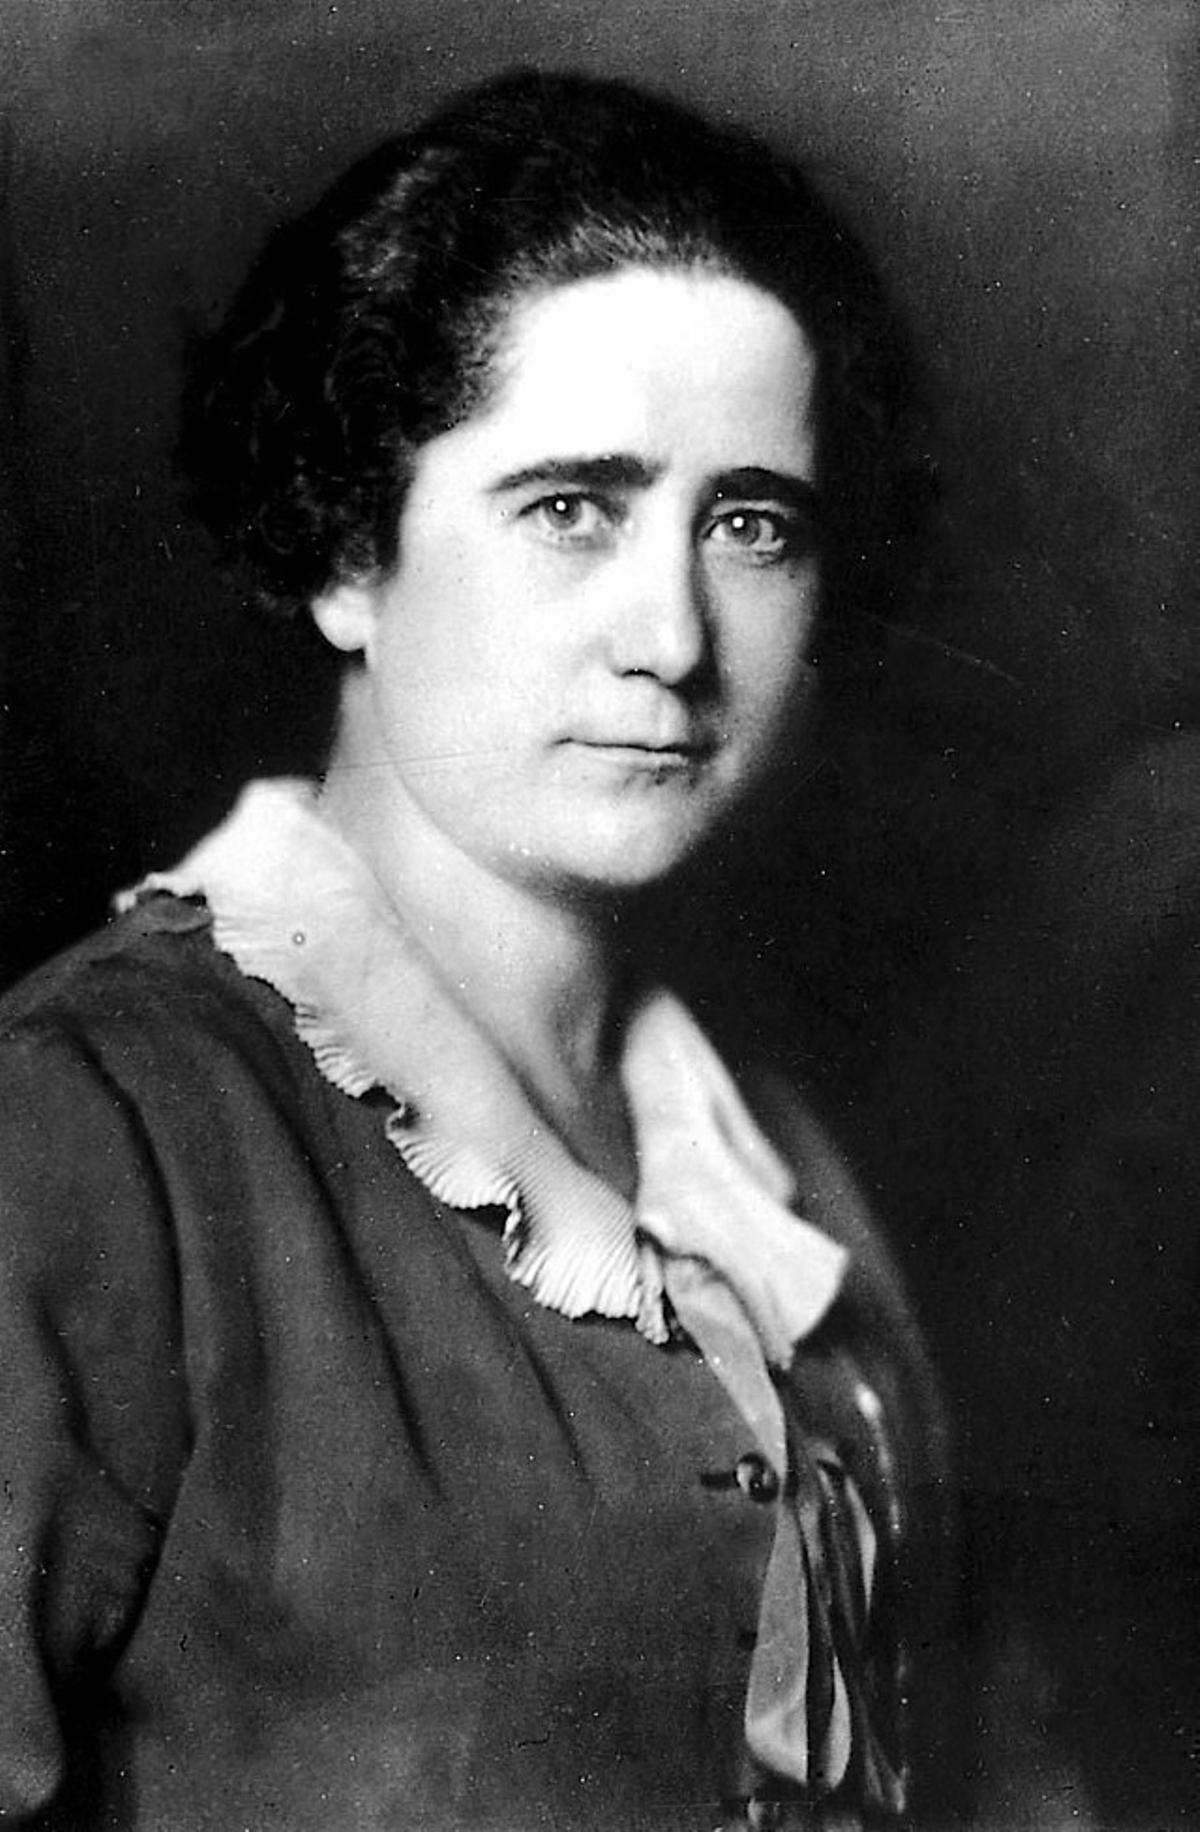 Clara Campoamor (1888-1972). Una de las feministas españolas más conocidas, pues creó la Unión Republicana femenina y fue una de las principales impulsoras del voto femenino en nuestro país. Finalmente, se logró en 1931, y tuvo que exiliarse durante la Guerra Civil.